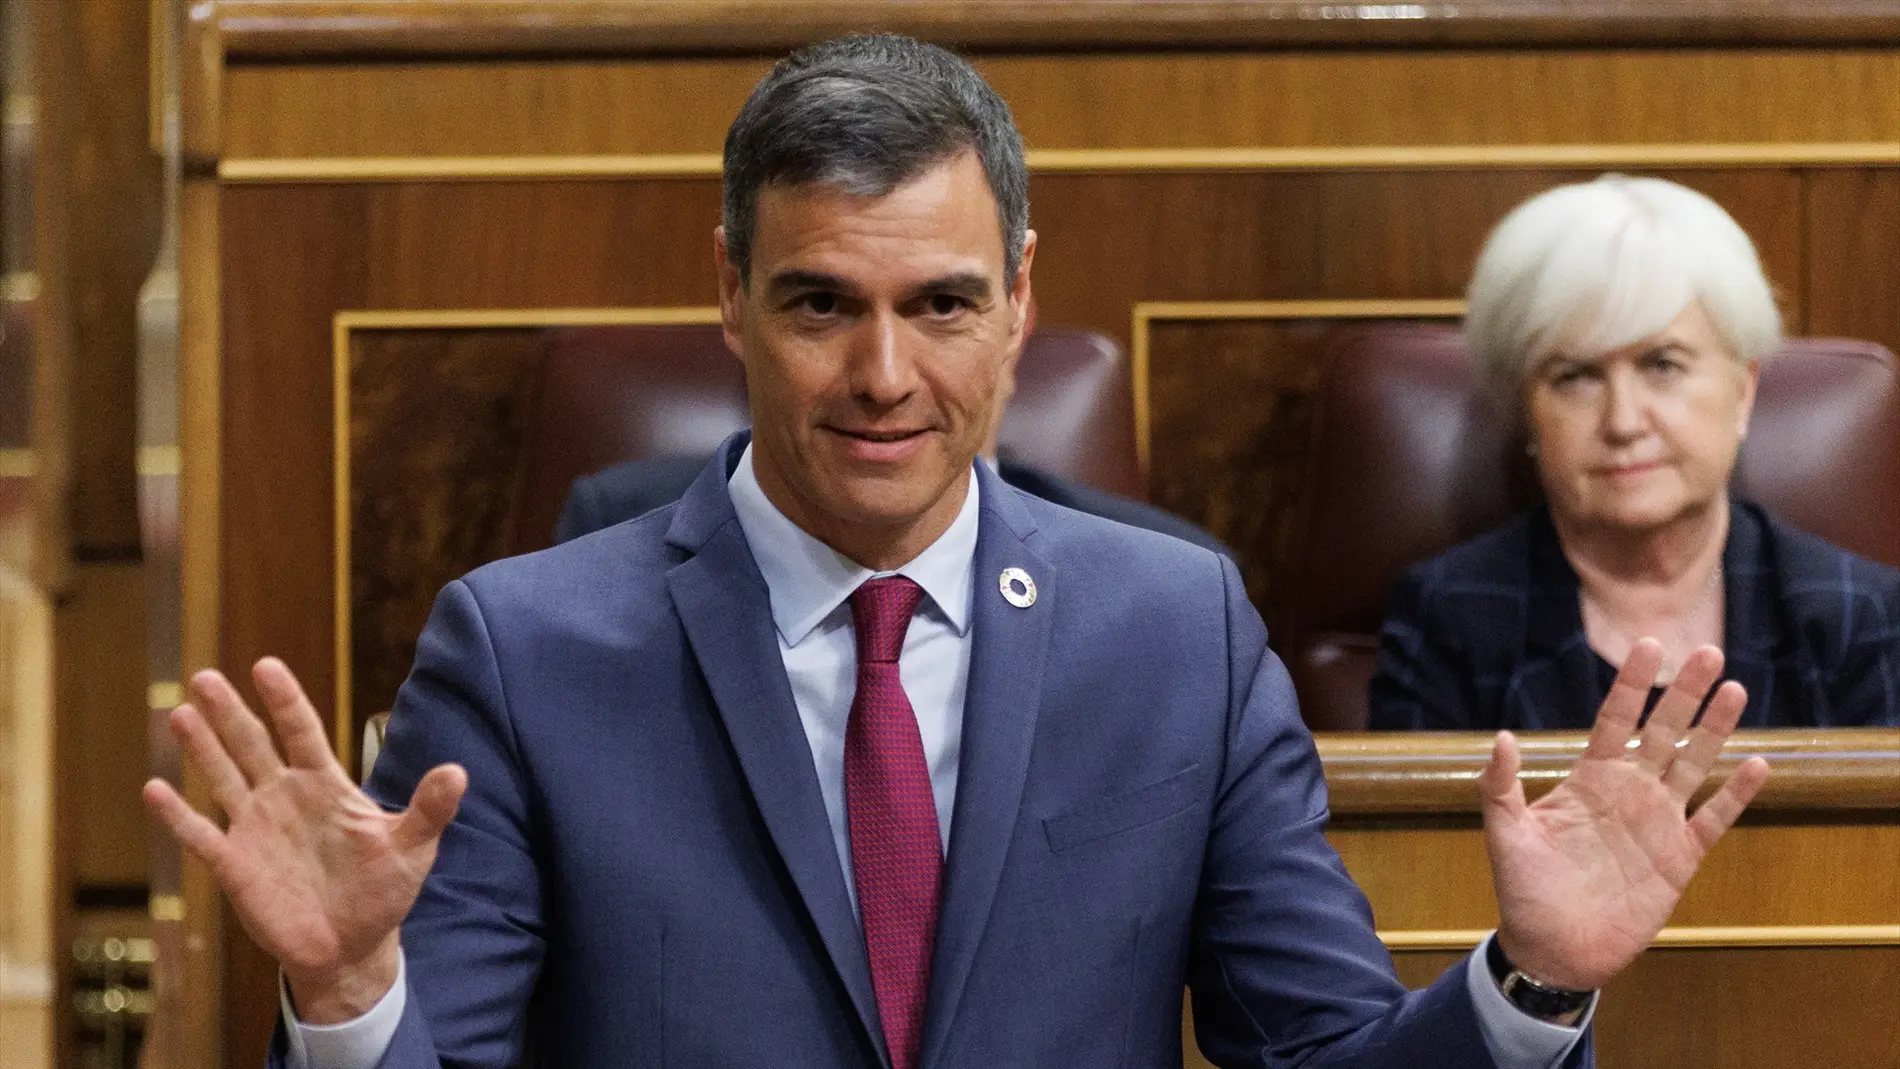 El presidente del Gobierno, Pedro Sánchez, interviene durante una sesión en el Congreso.